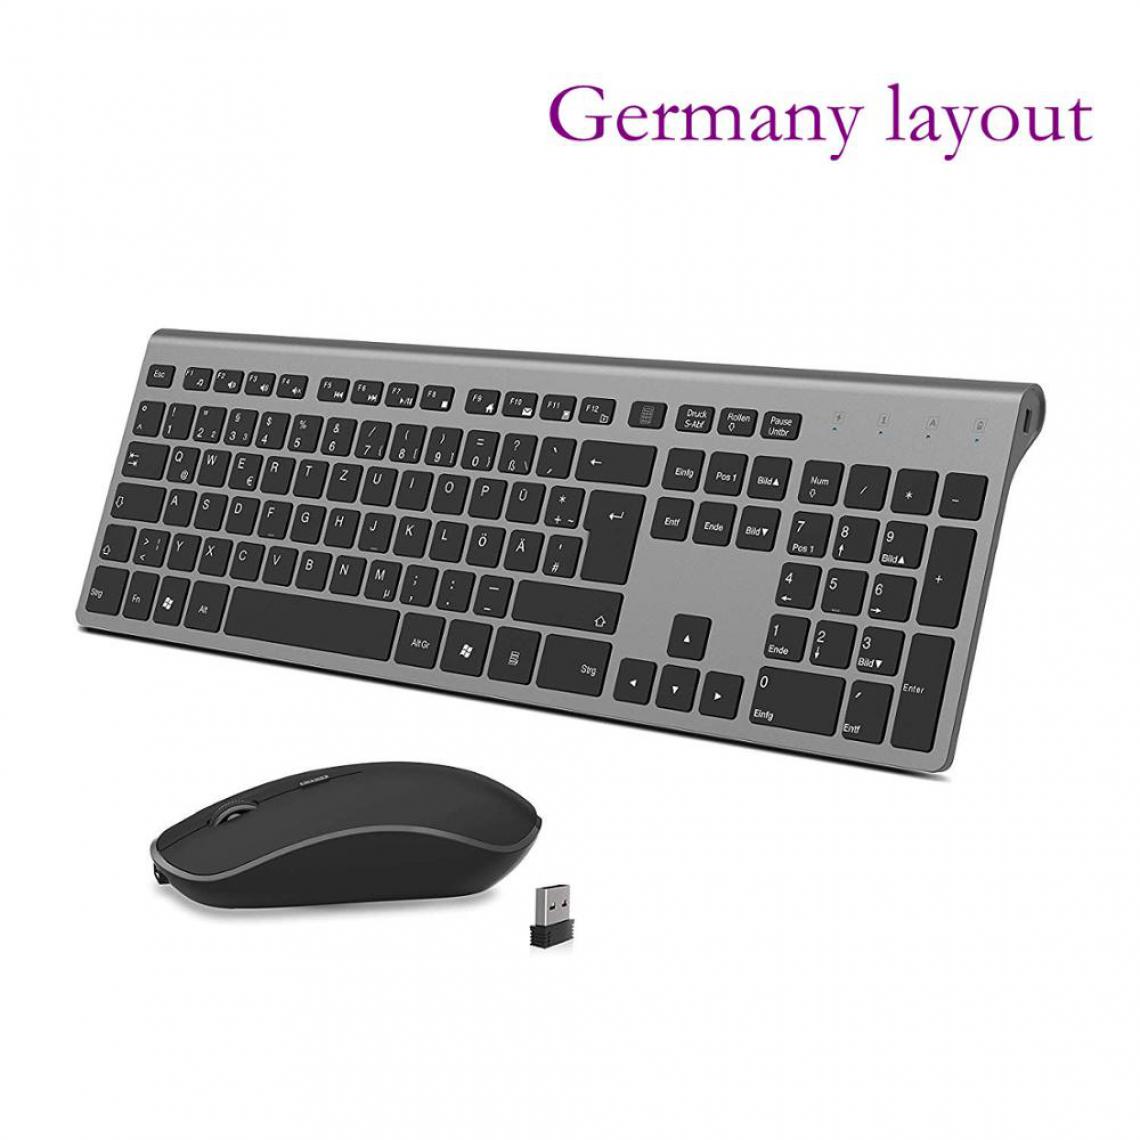 Generic - Kit clavier et souris sans fil, batterie rechargeable à connexion stable 2.4 gigahertz en version allemande    43.3 * 14  cm - Noir  - Clavier